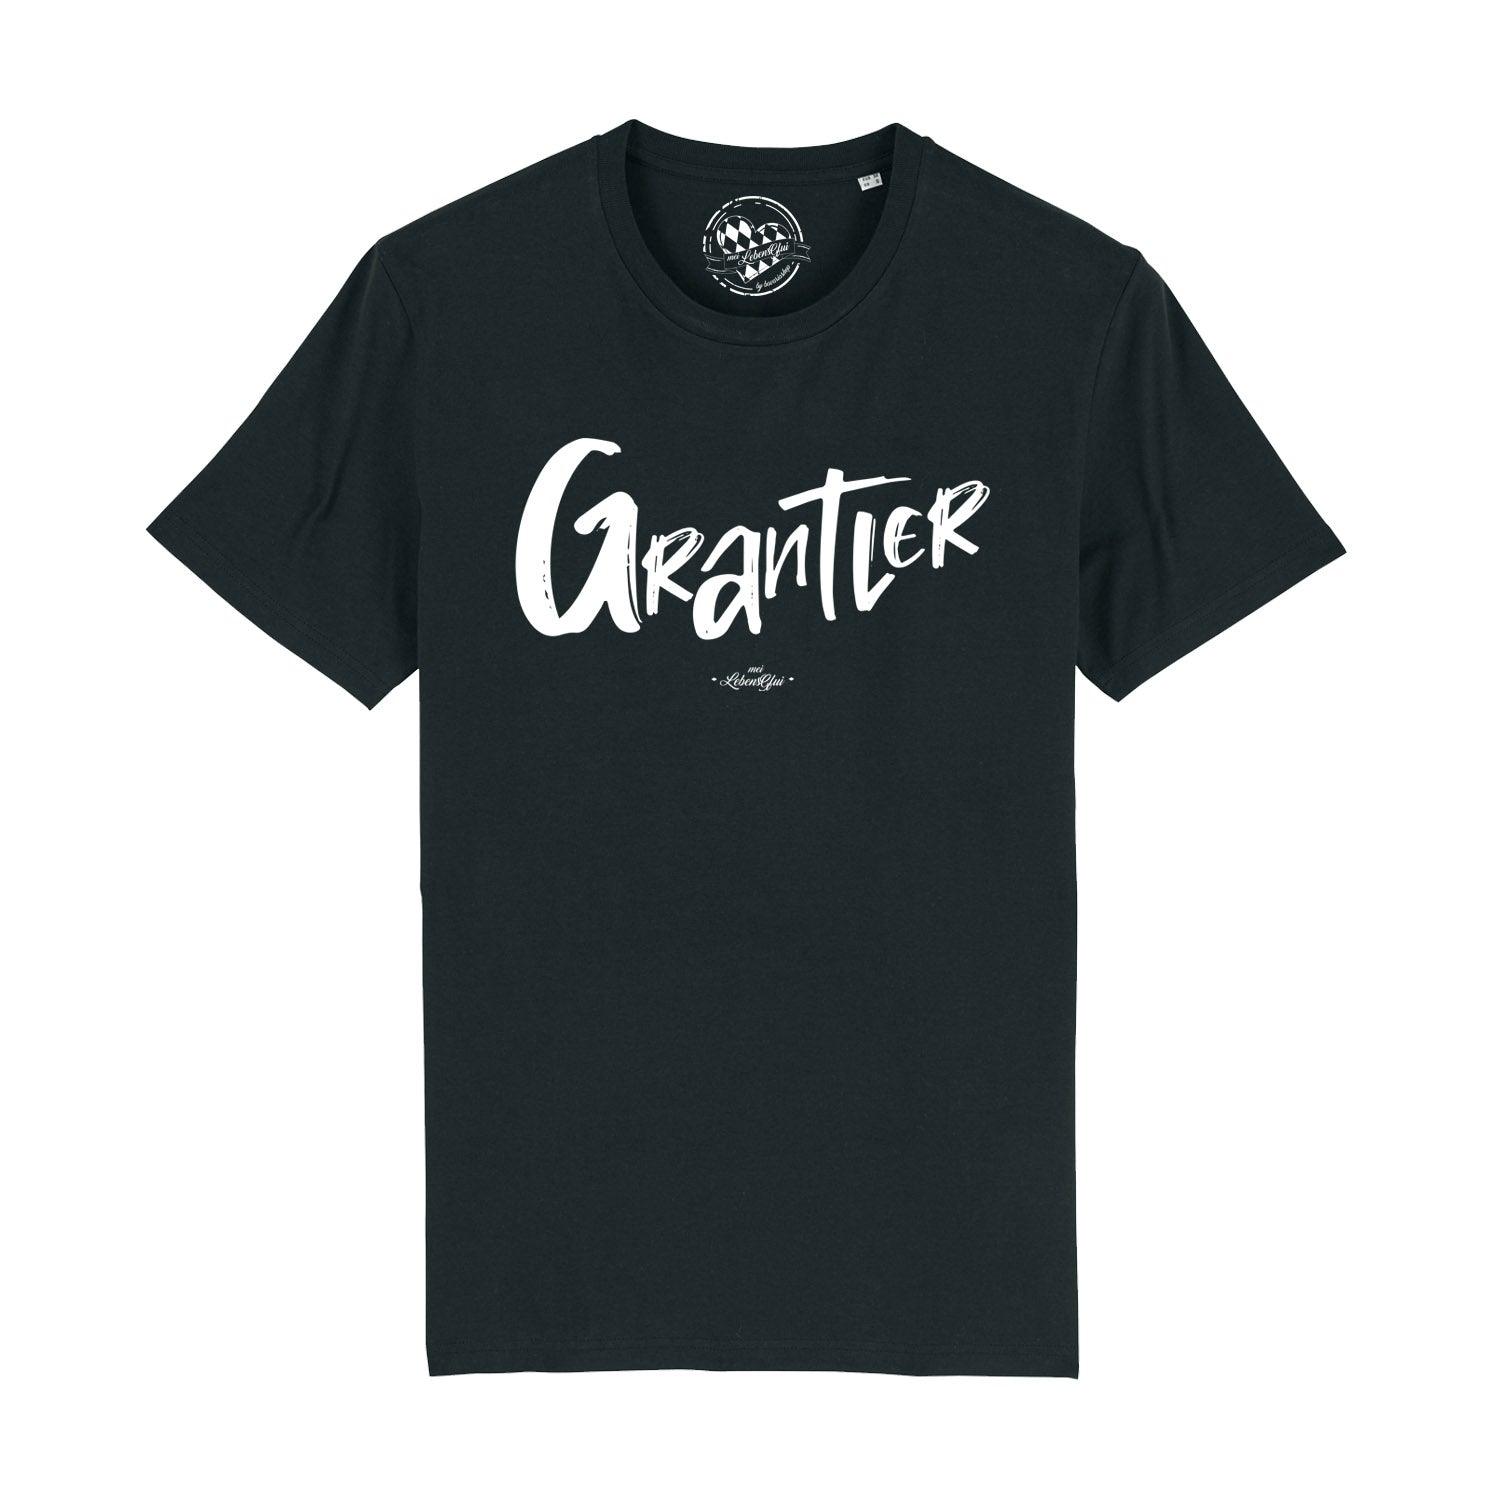 Herren T-Shirt "Grantler" - bavariashop - mei LebensGfui